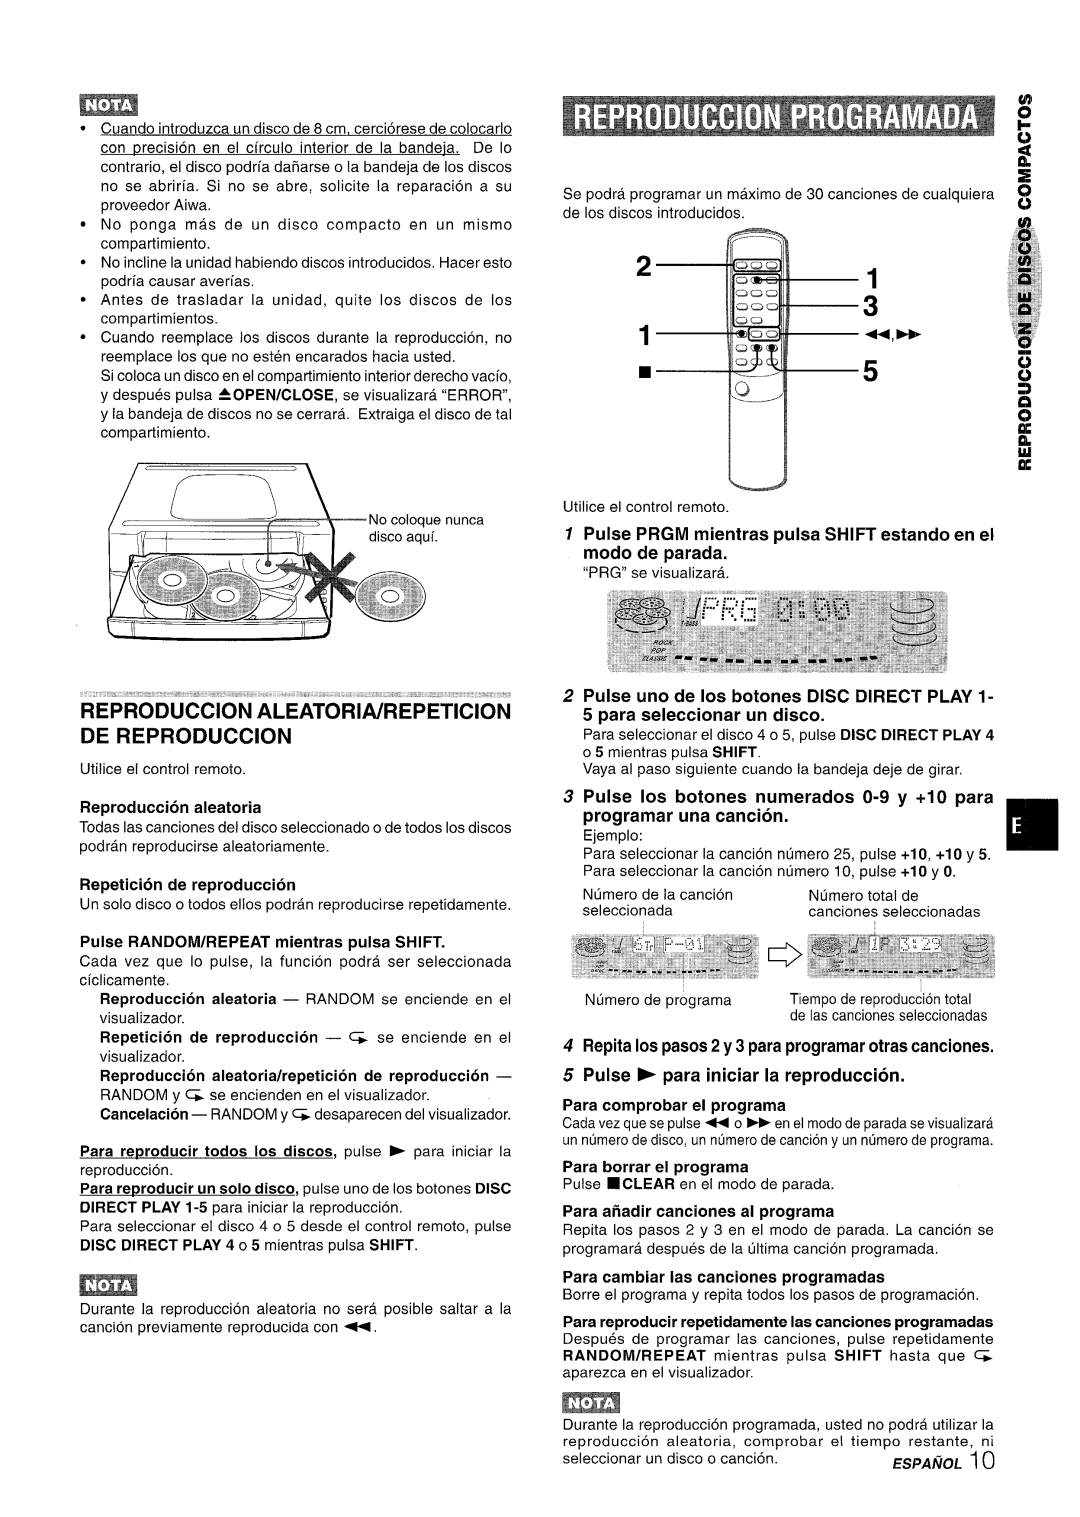 Aiwa Z-R555 manual Reproduction Aleatoria/Repeticion De Reproduction, Ii Il 